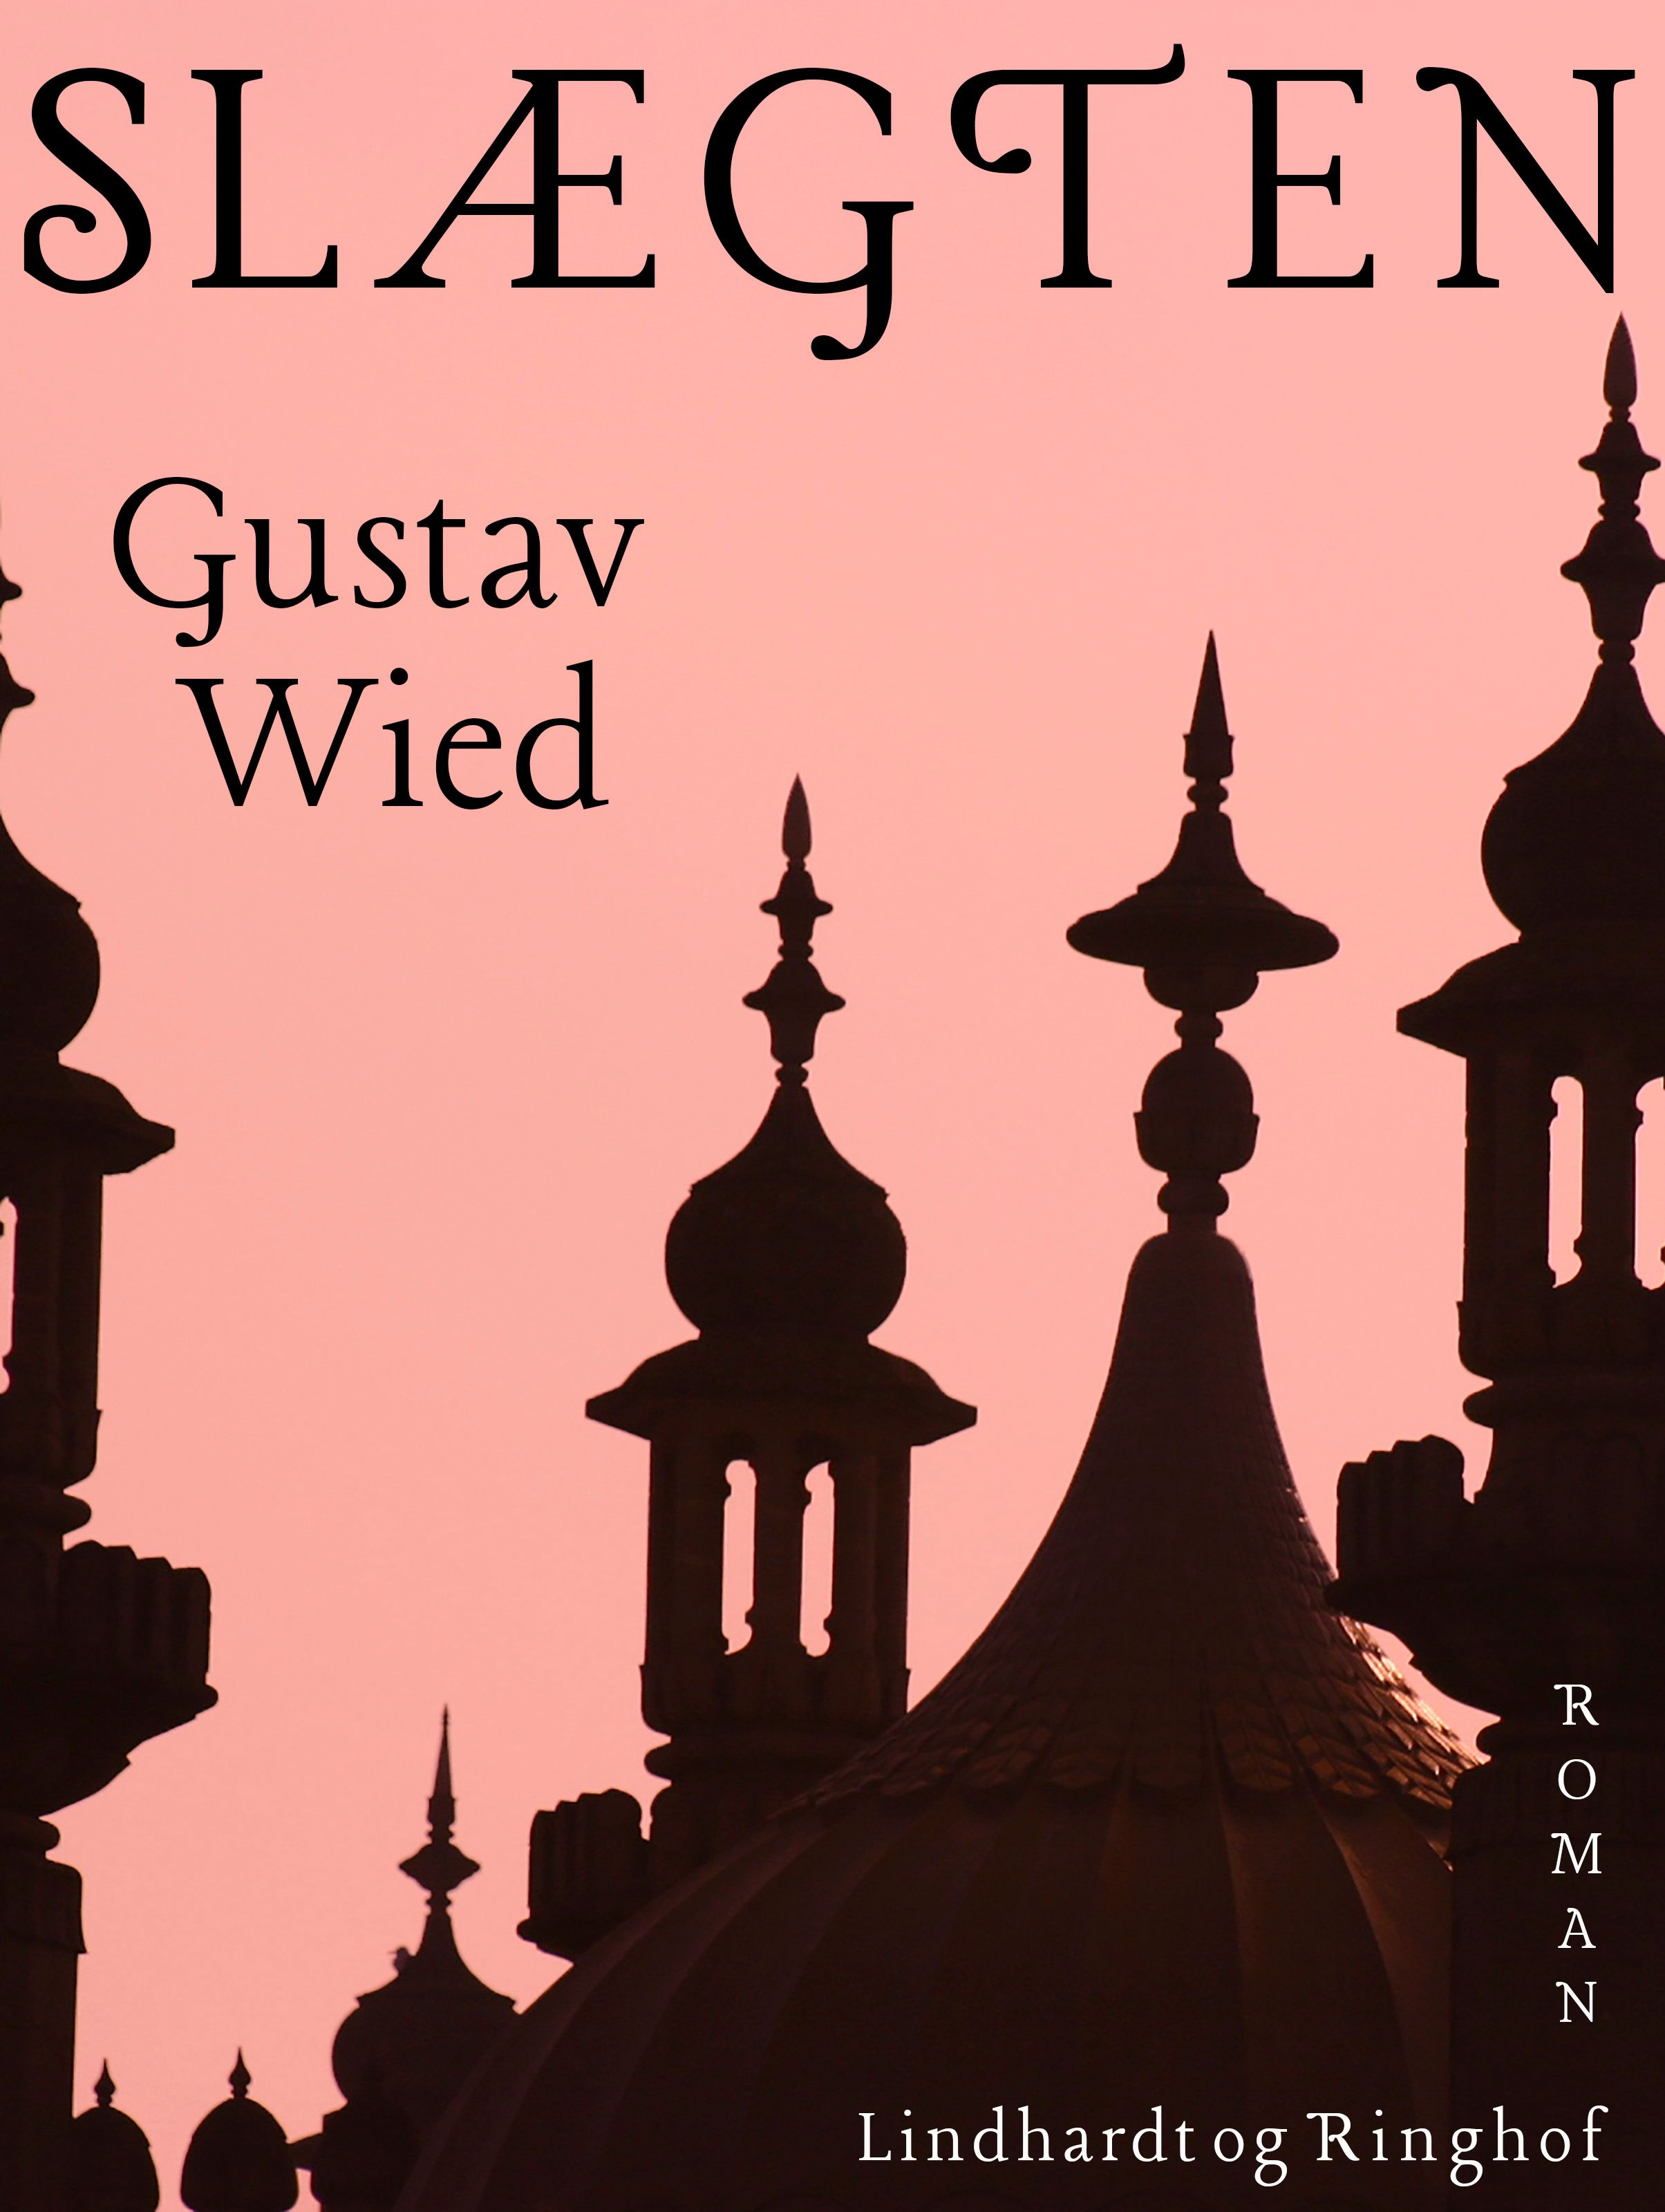 Slægten, ljudbok av Gustav Wied